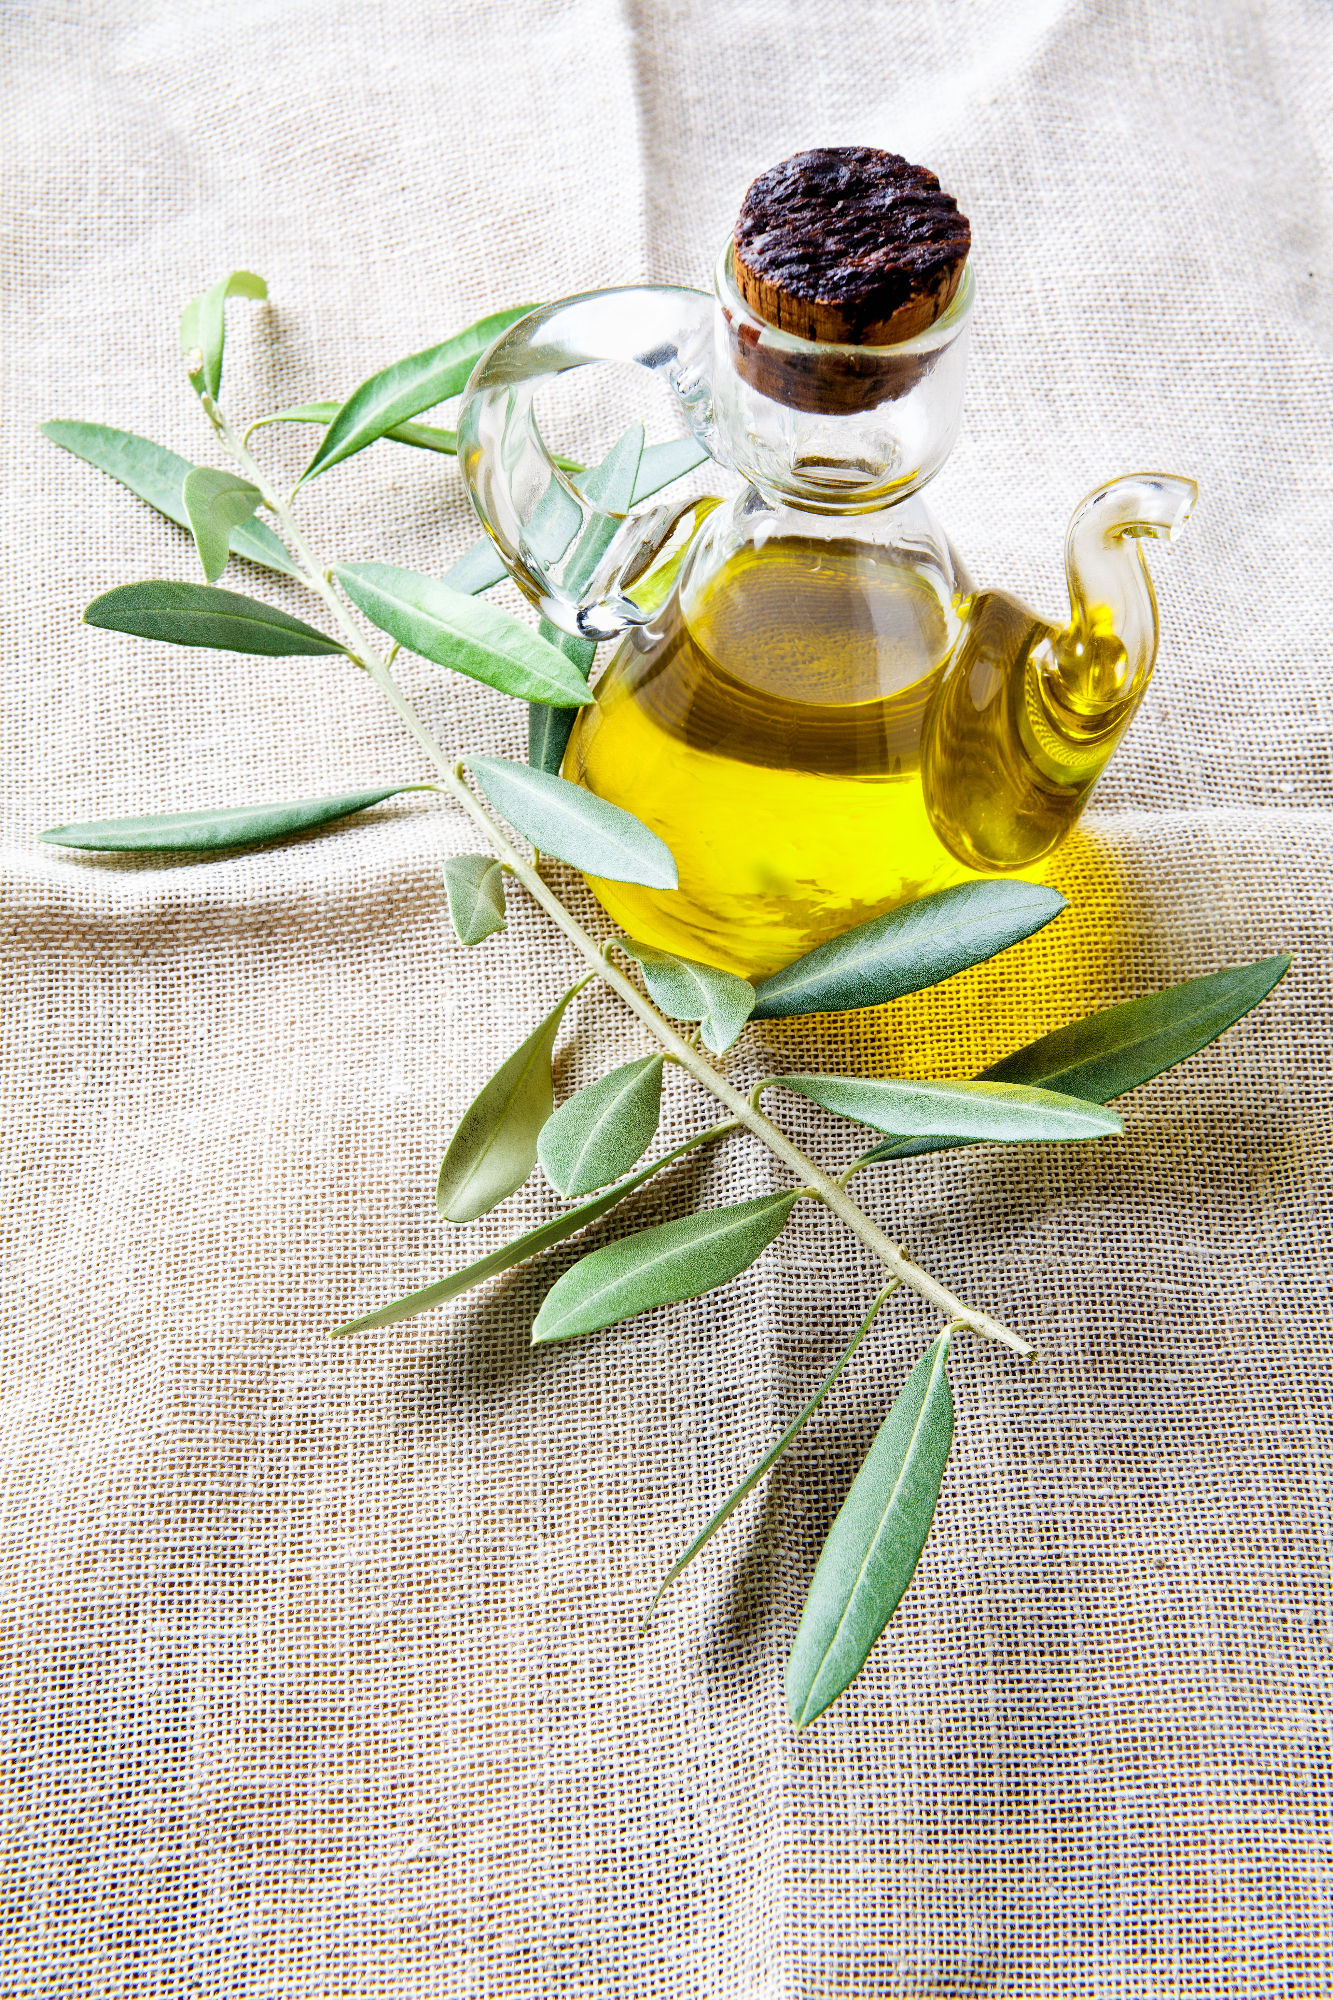 Olivno olje kot del zdrave prehrane